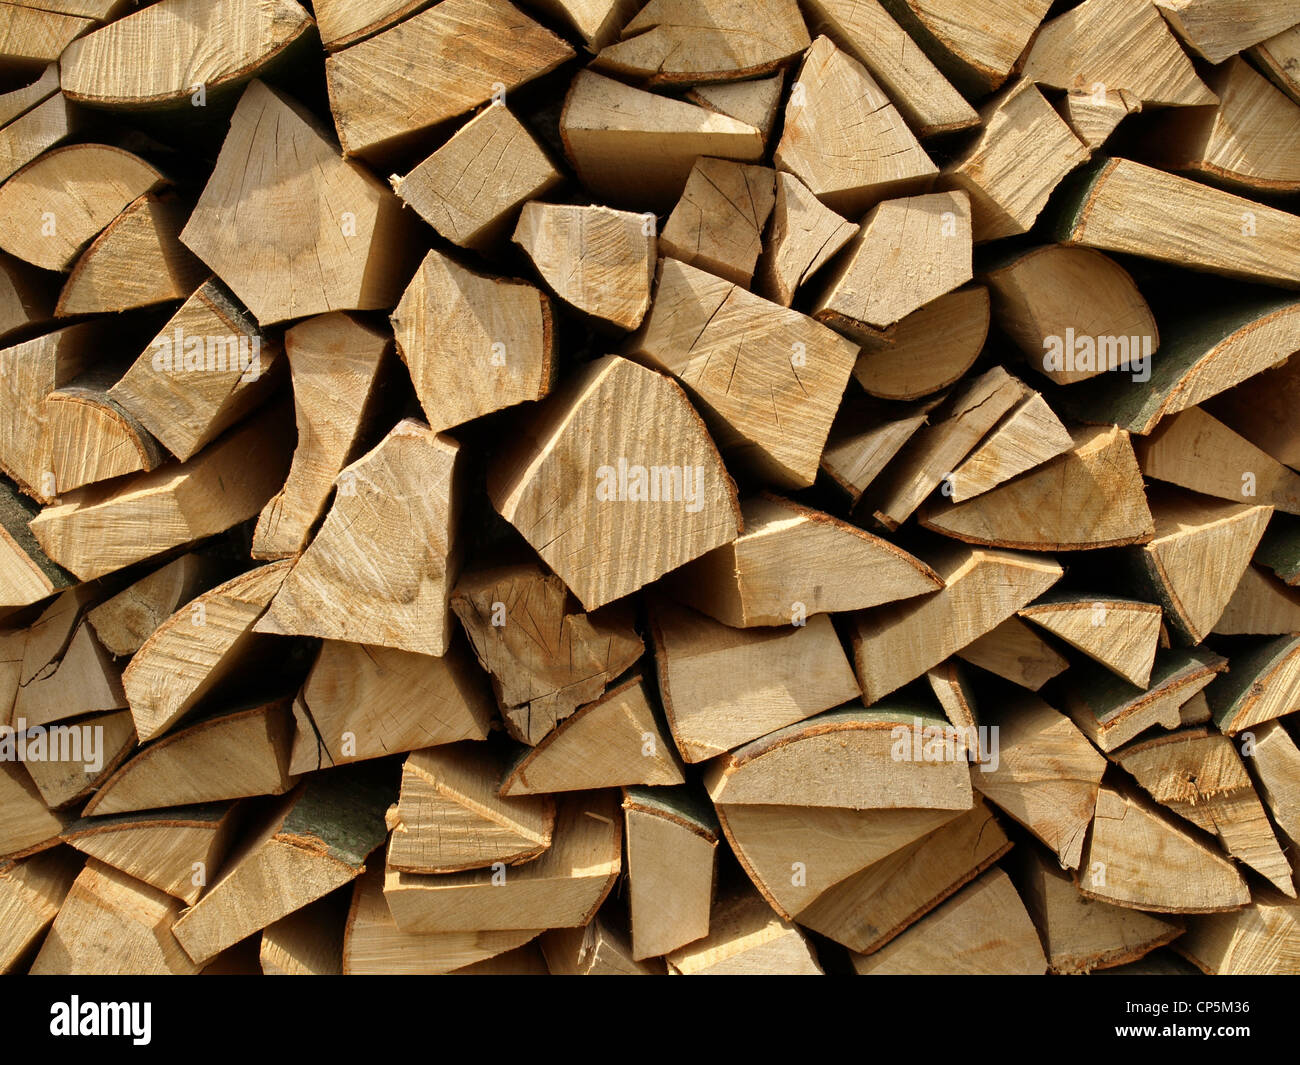 Los pedazos de madera - leña / Holzscheite woodpile - - - Brennholz Holzhaufen Foto de stock